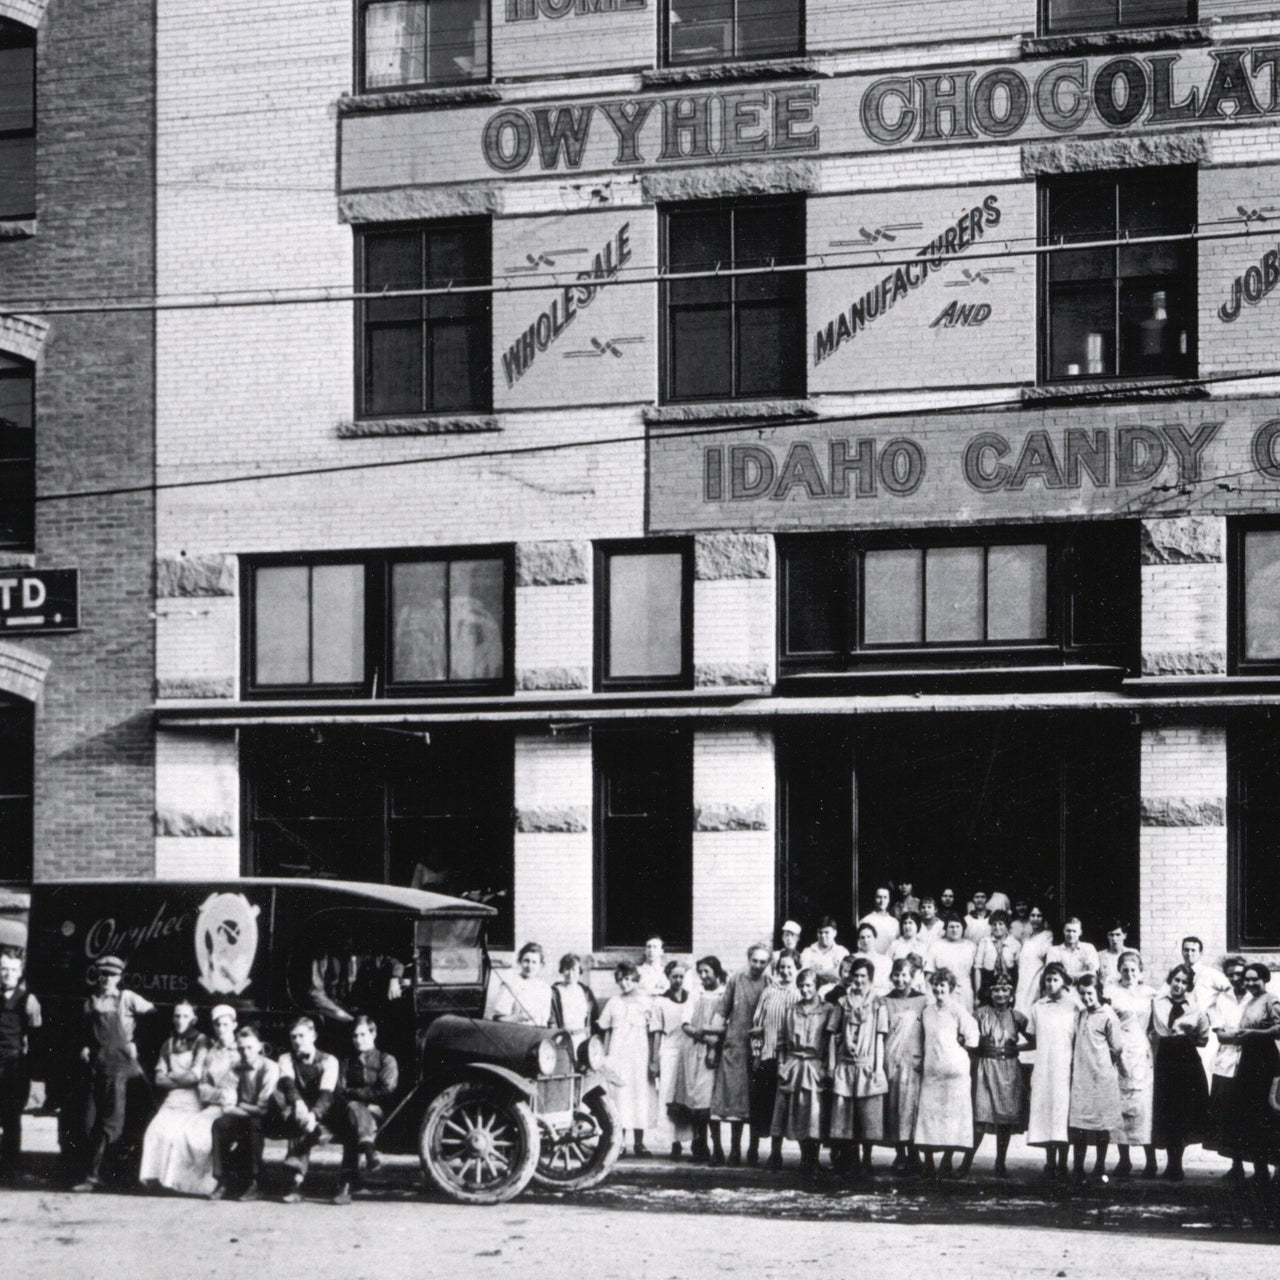 Idaho Candy Co. factory outside